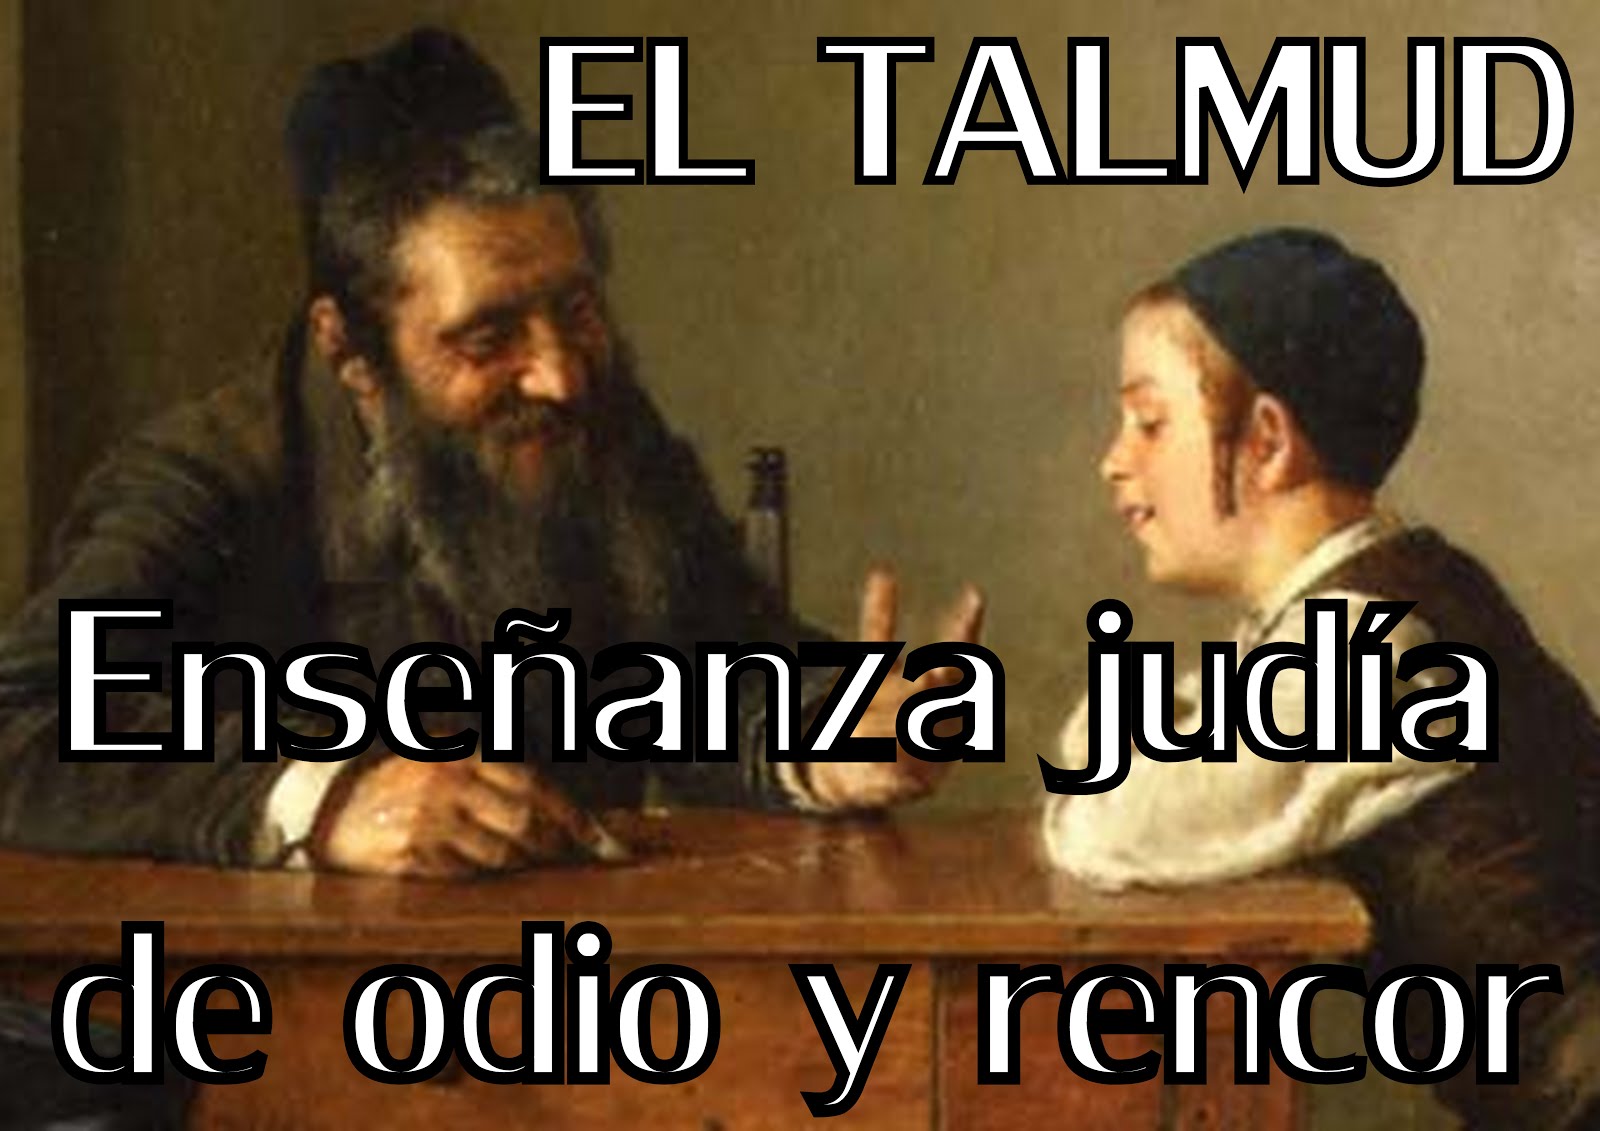 EL TALMUD: Enseñanza Judía de Odio y  Rencor contra los hombres.